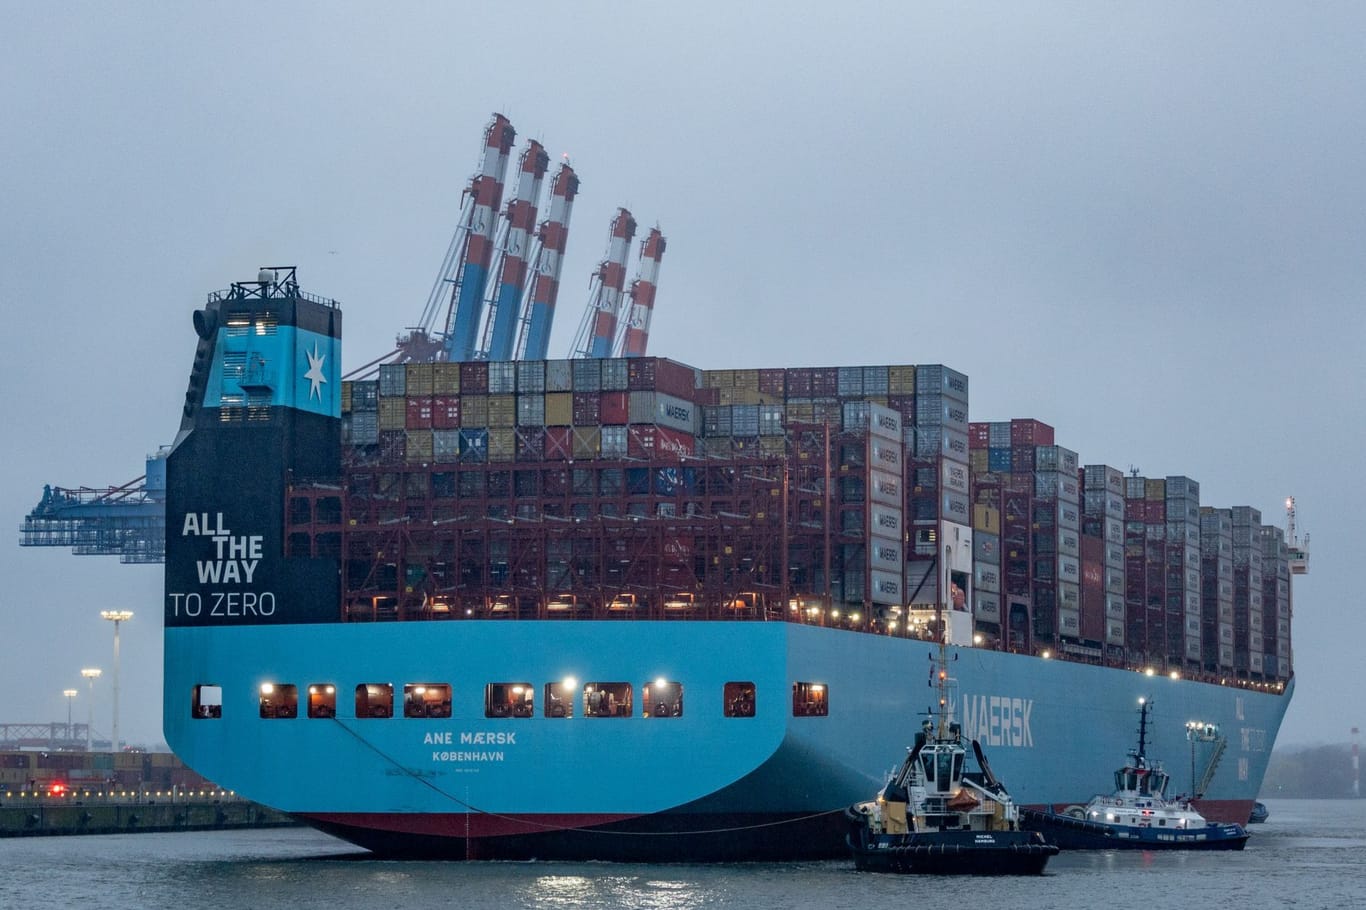 Die "Ane Maersk" der Reederei Maersk am Eurogate-Containerterminal im Hamburger Hafen: Sie ist weltweit erste große Methanol-Containerschiff.